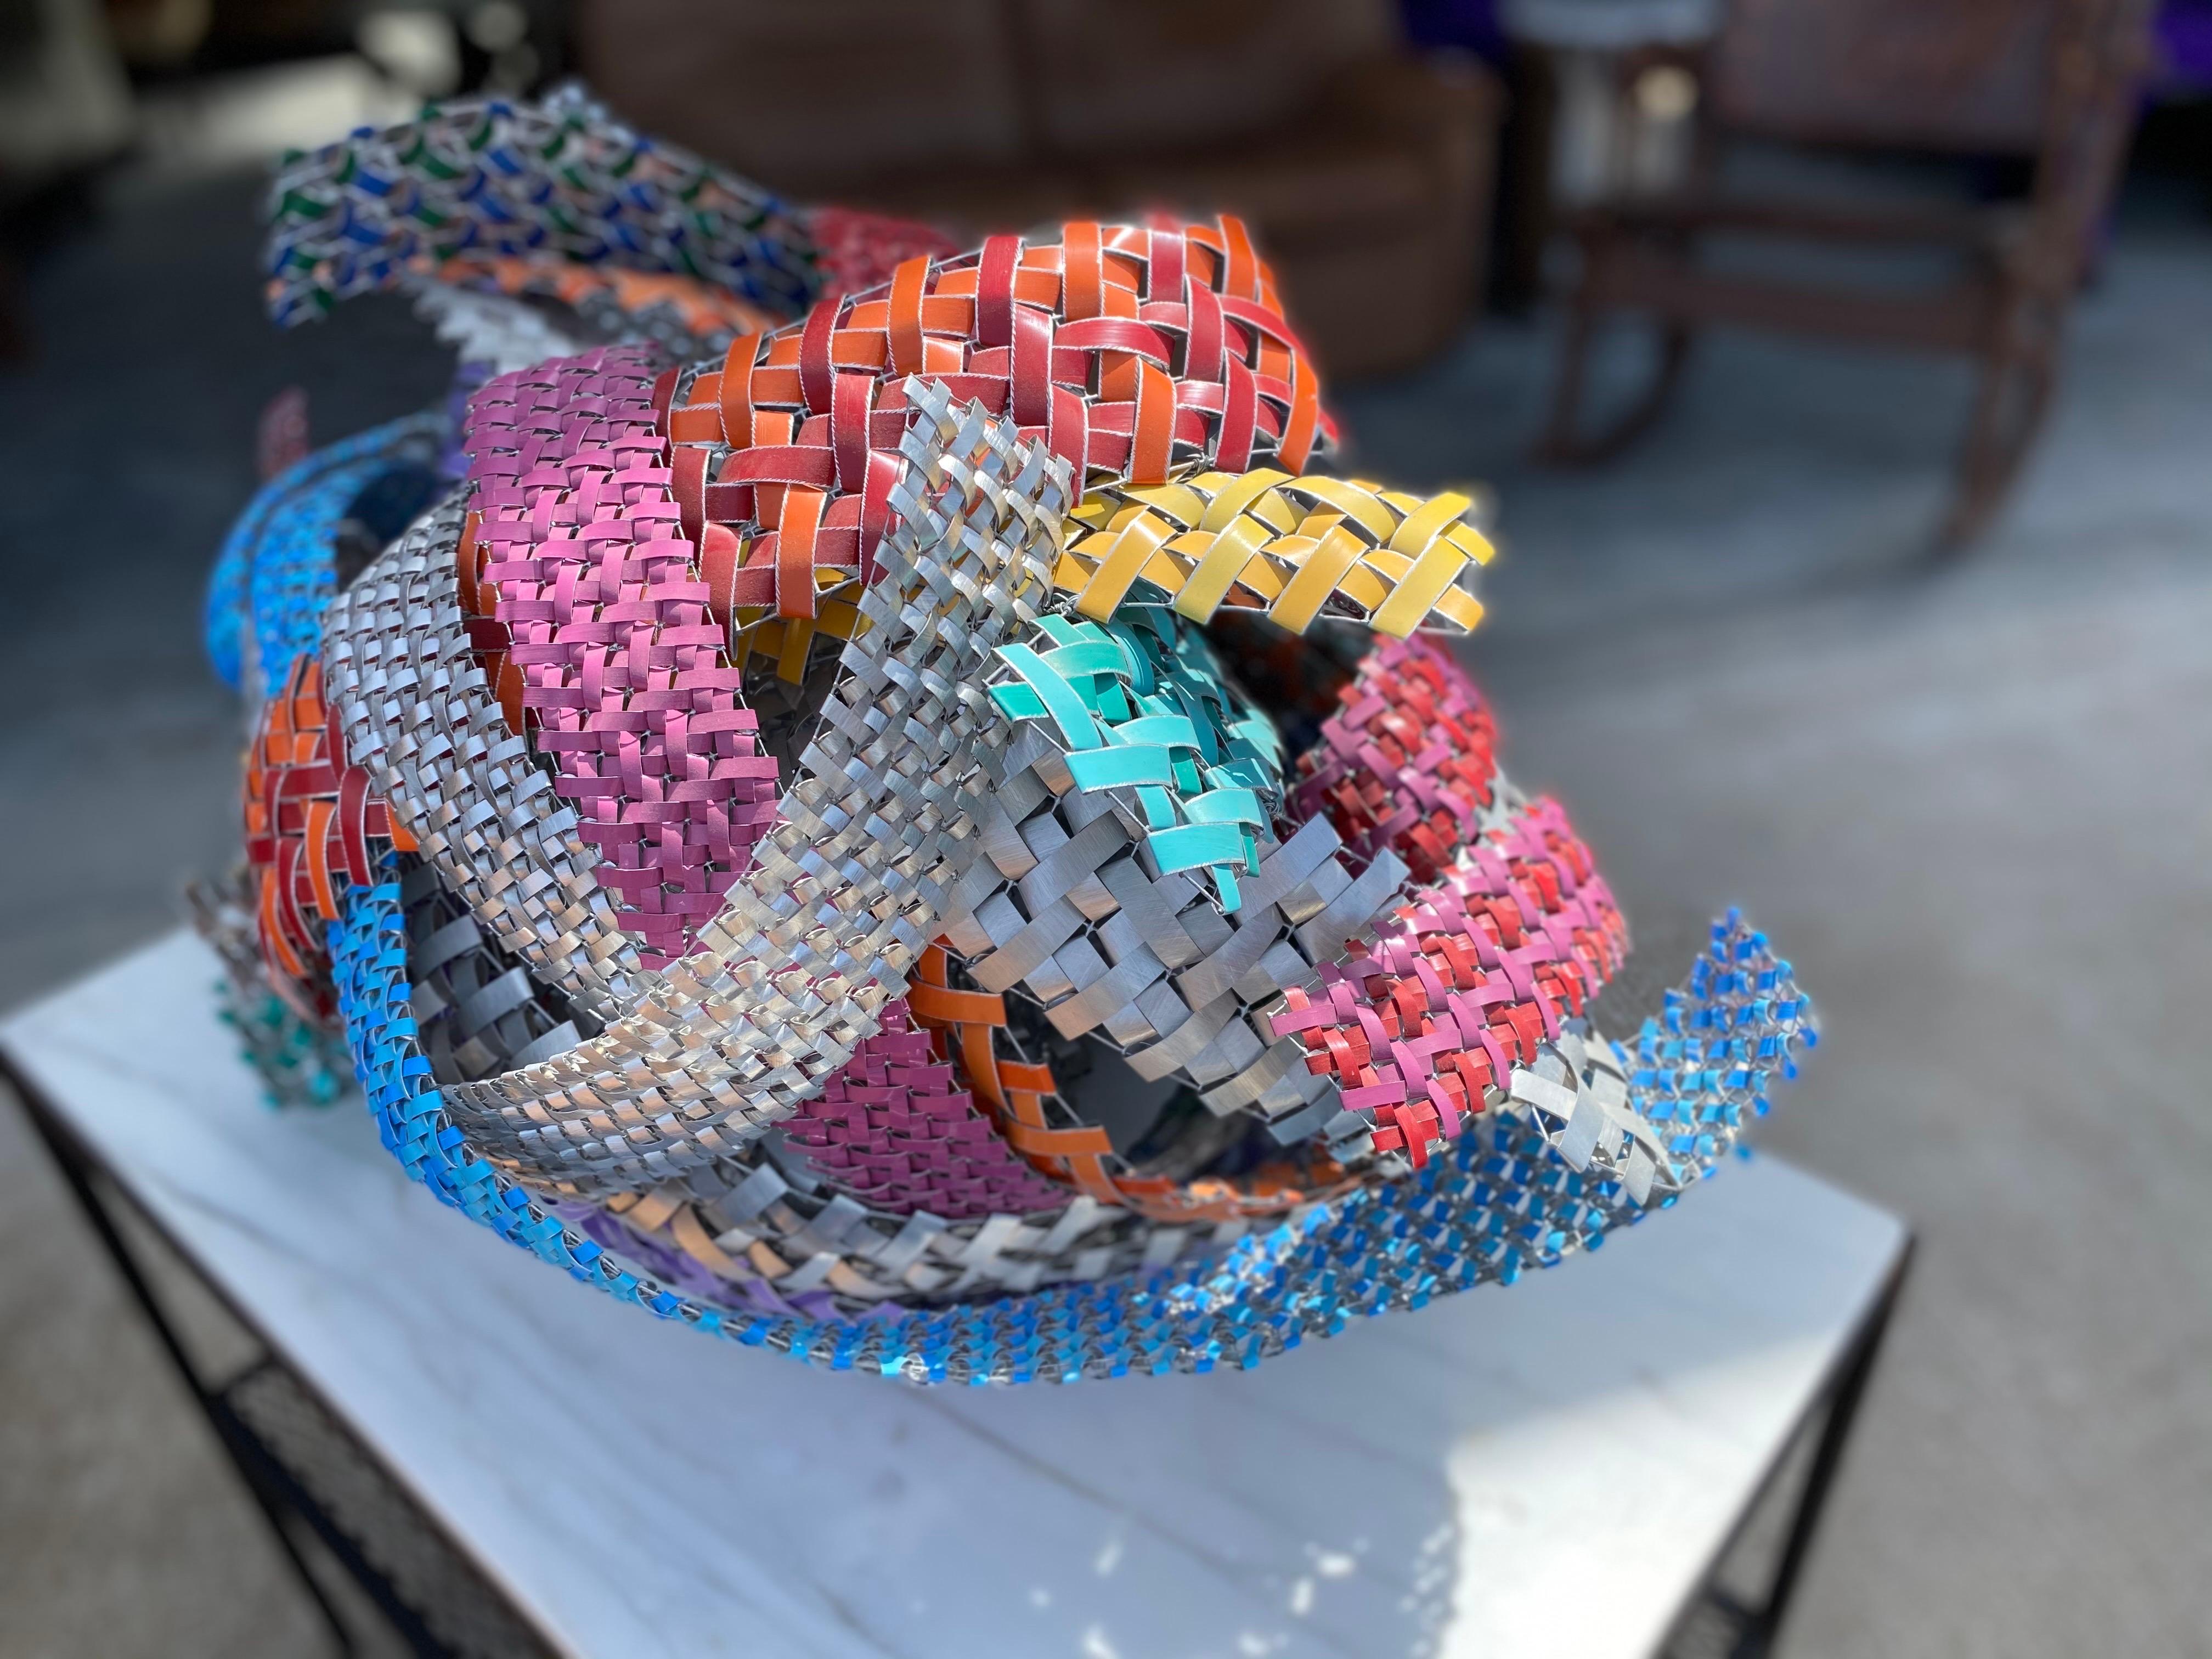 Aluminum Woven Basket Sculpture by Sculptor John Garrett